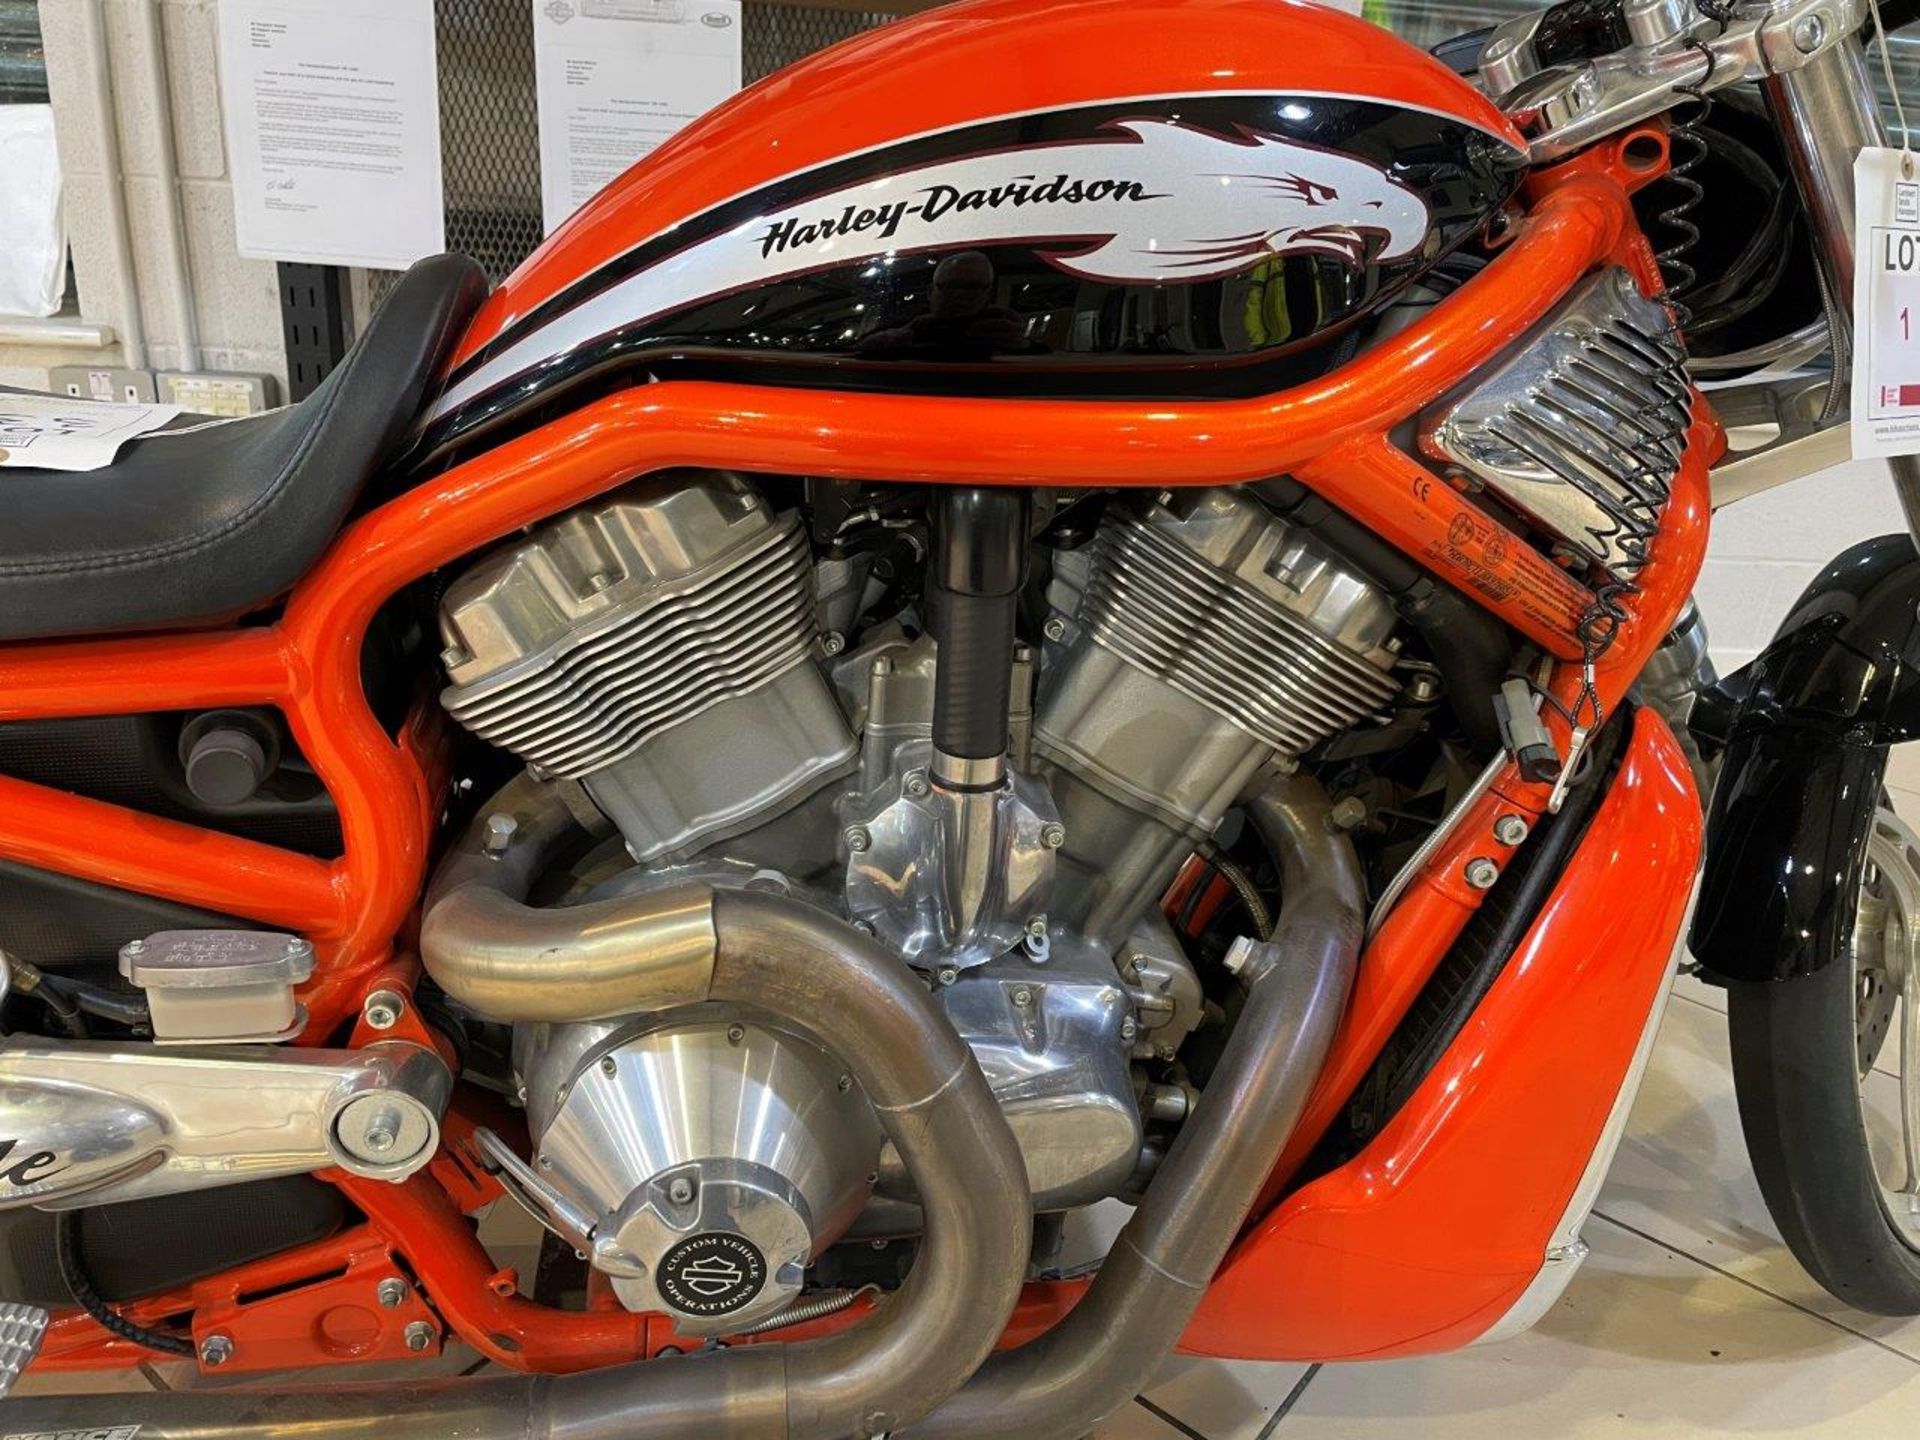 Harley Davidson V-Rod Destroyer Drag Race Bike (2006) - Image 20 of 34